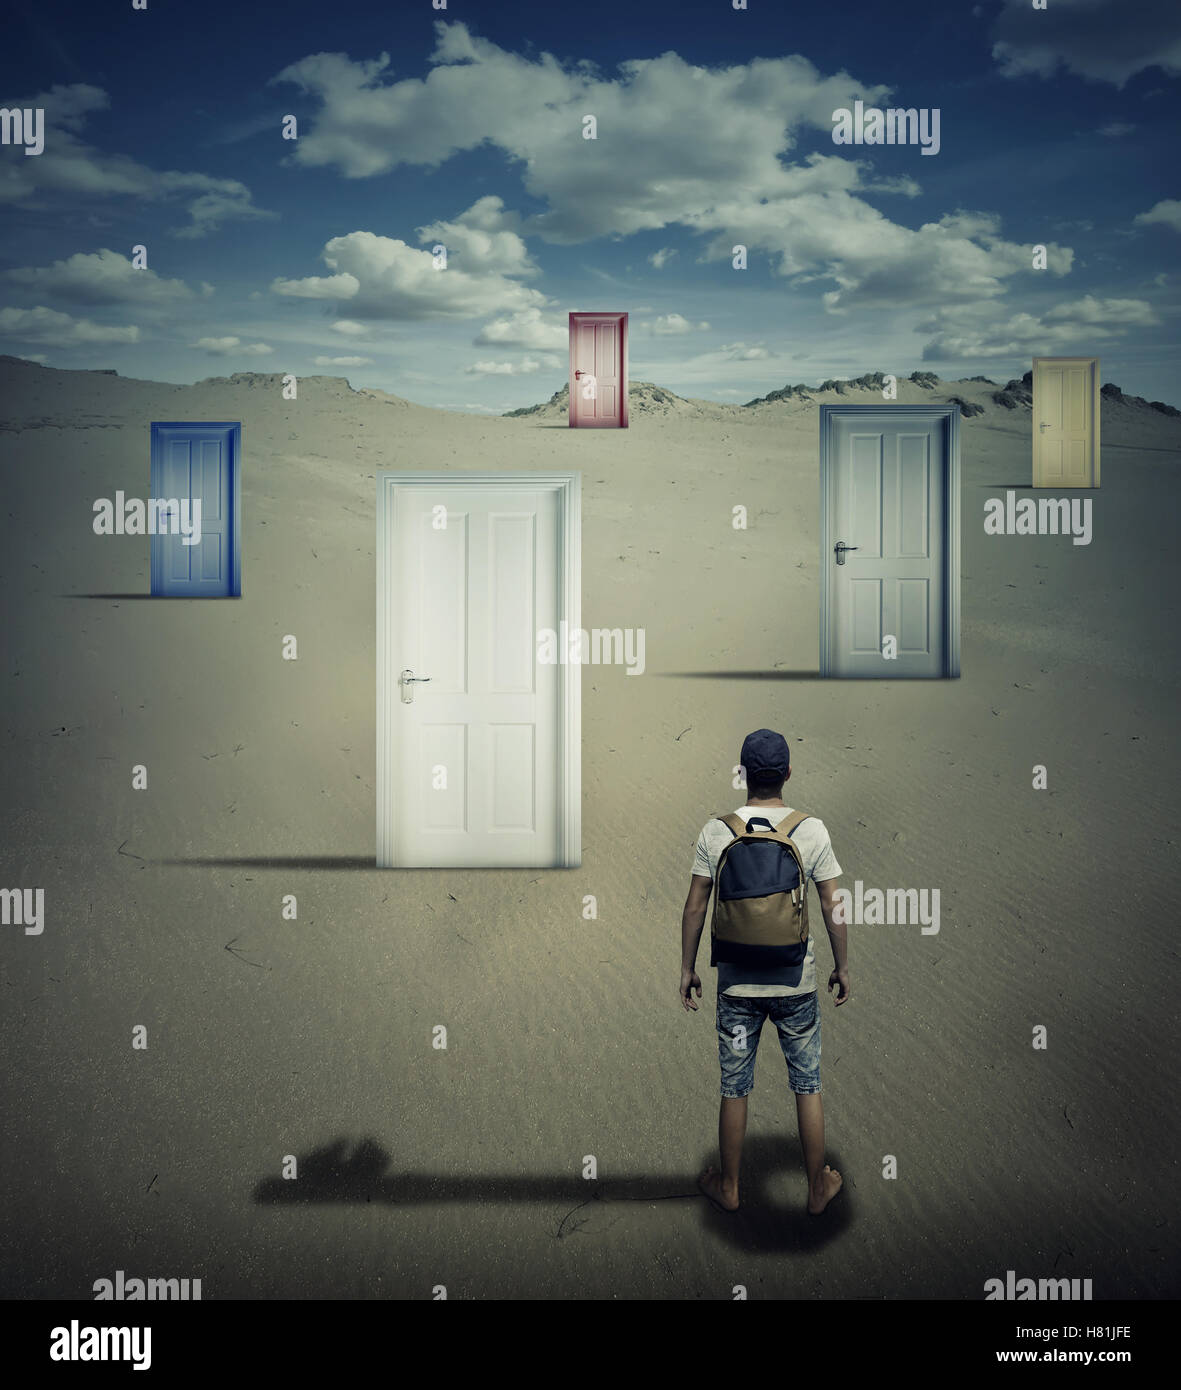 Image conceptuelle avec une personne debout en face de différentes portes fermées, laissant tomber une clé, en choisissant l'ombre qui l'un d'ouvrir. Banque D'Images